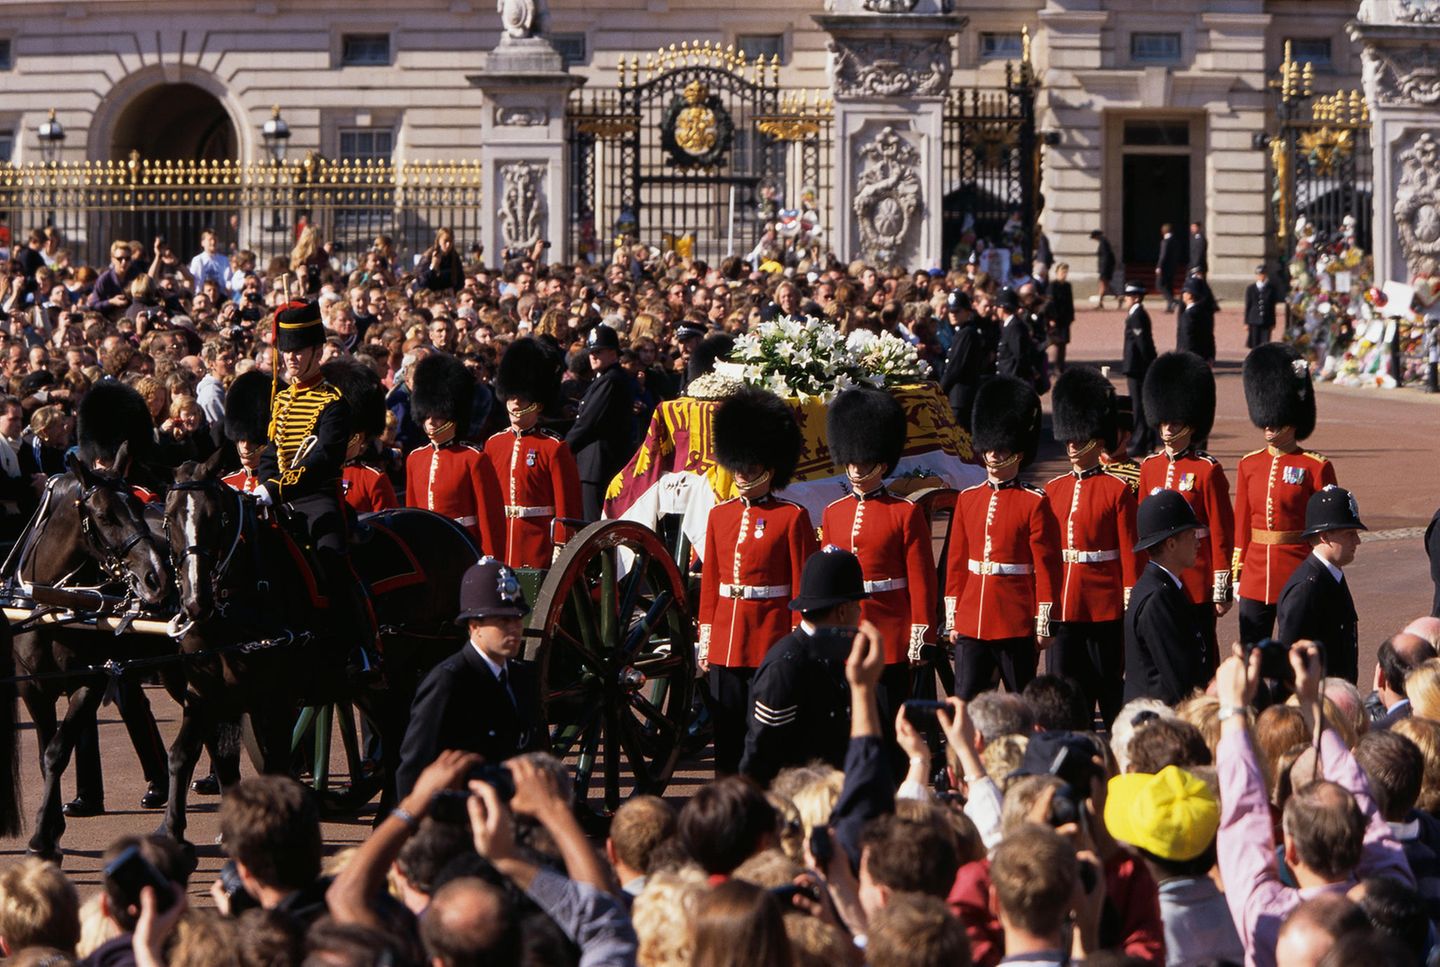 Am 6. September 1997 findet in London eine Trauerfeier für Diana statt - und die Queen tut etwas, dass sie nur äußert selten für jemanden tut: Als der Sarg Dianas an ihr vorbeifährt, neigt die Queen ihren Kopf, um ihrer Schwiegertochter Respekt zu zollen. 